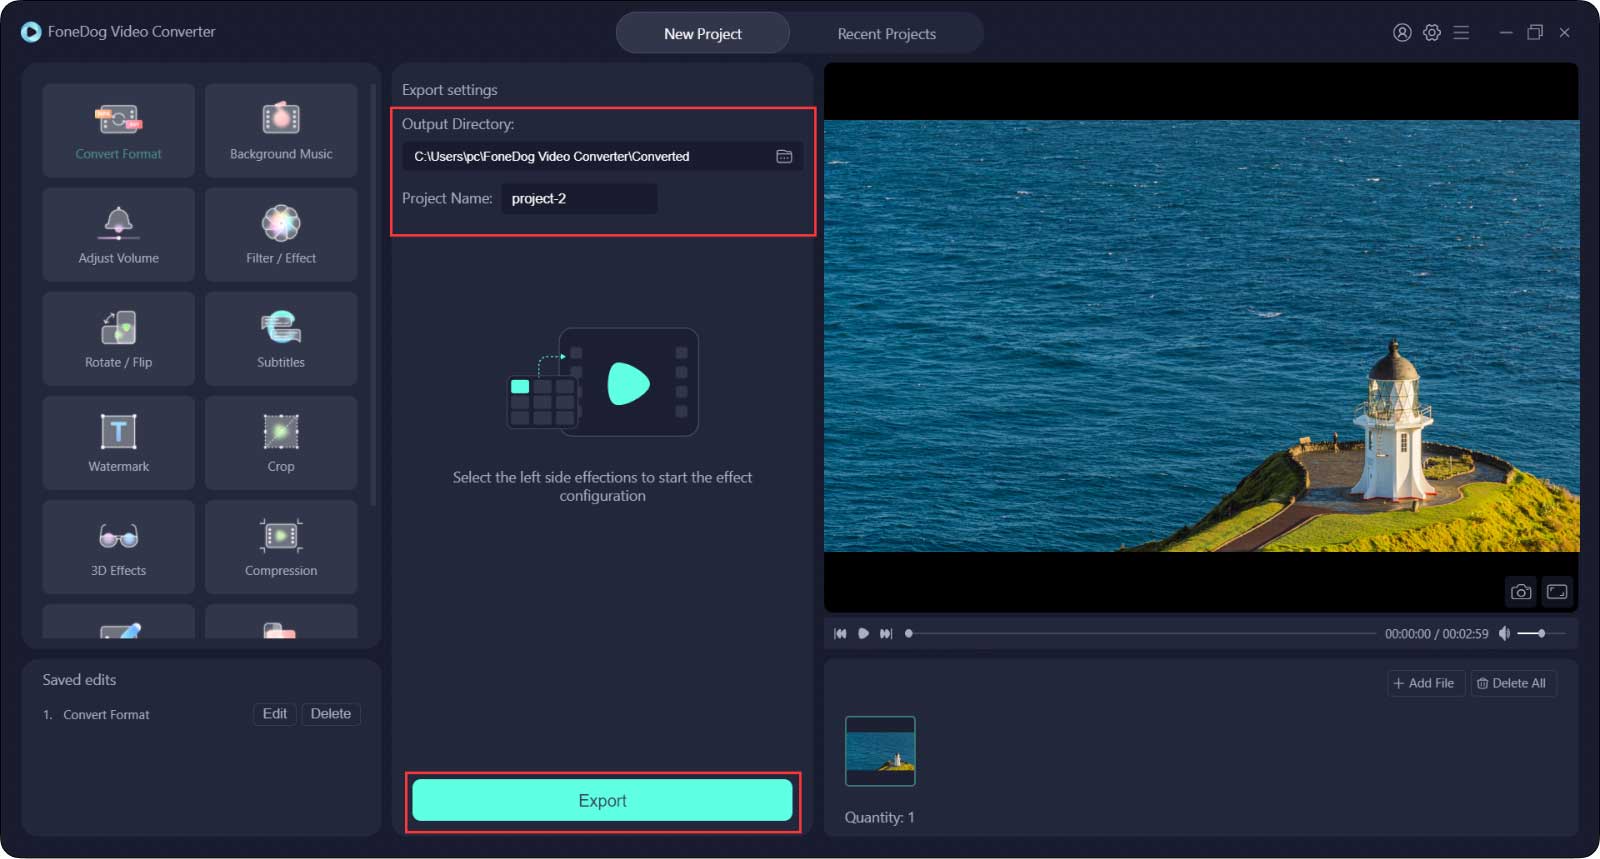 Come realizzare video a schermo intero utilizzando Fonedog Video Converter-Export